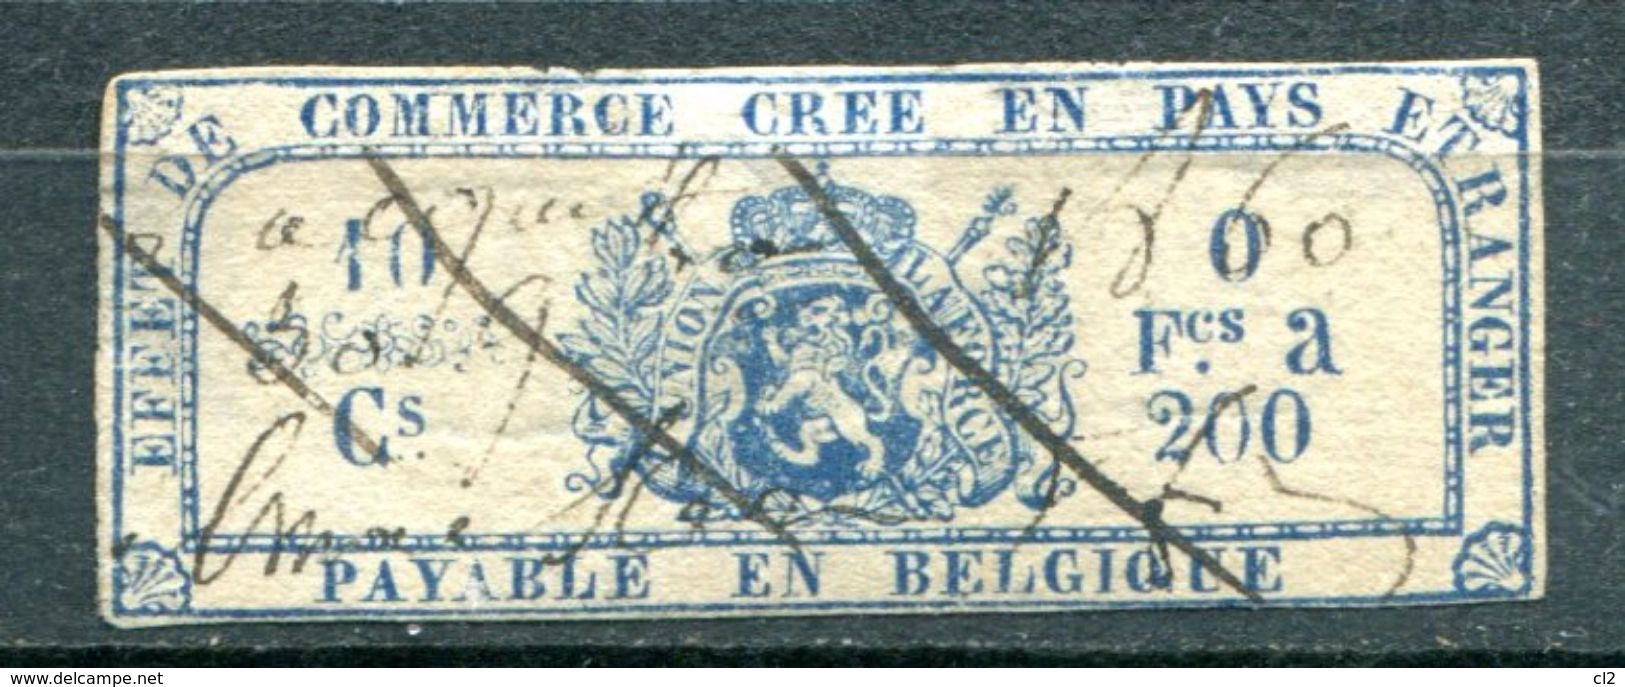 BELGIQUE - Fiscaux - Effet De Commerce Annulé En 1860 - Timbres